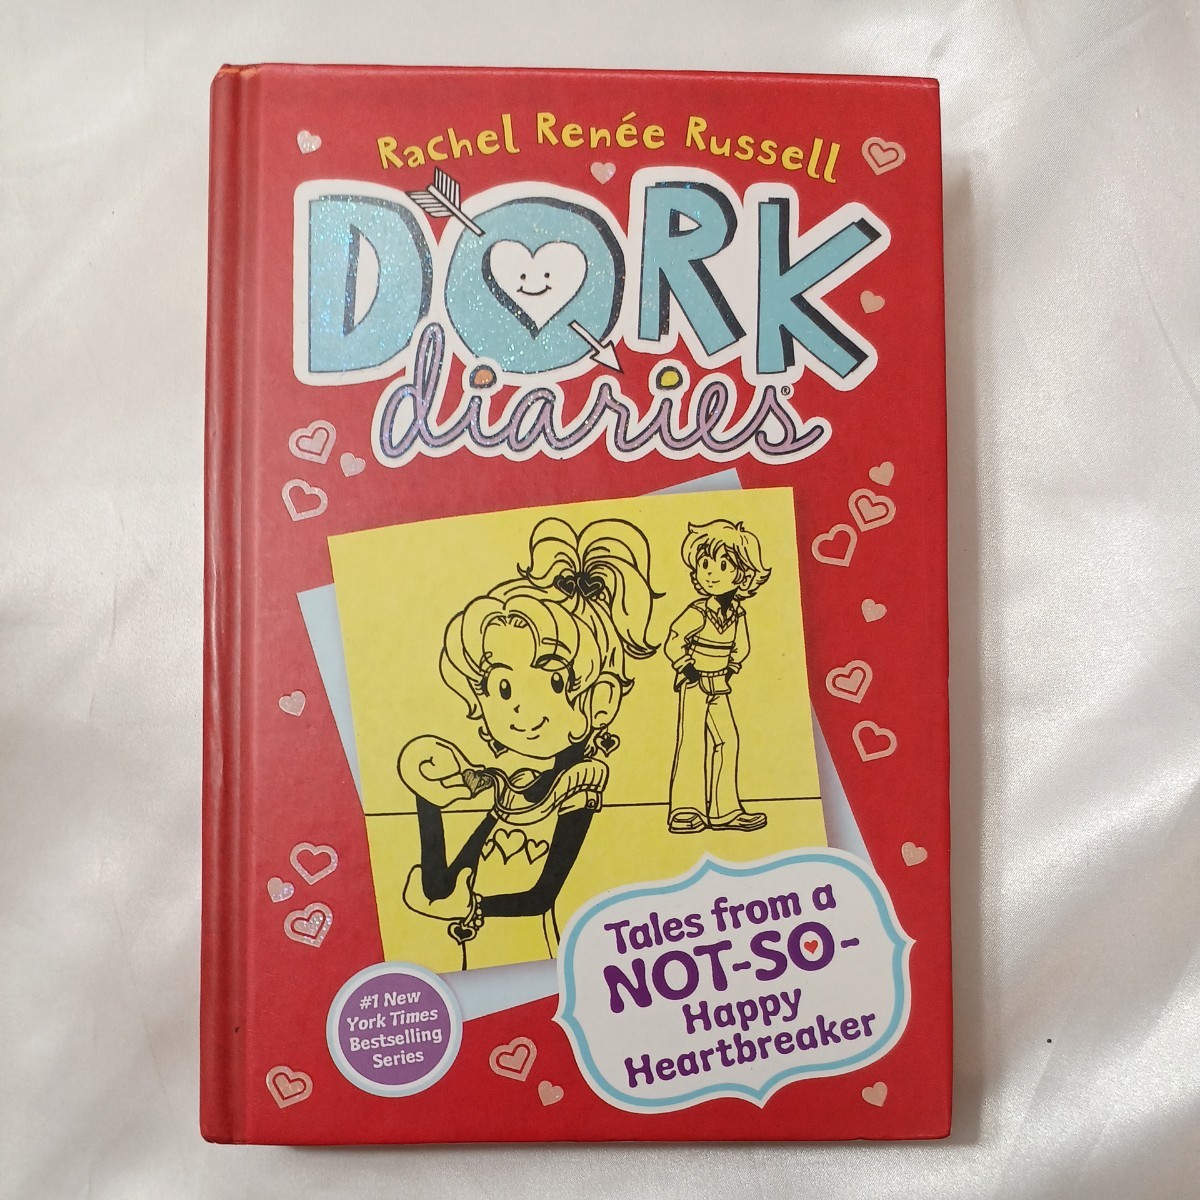 zaa-434♪Dork Diaries 6 : Tales from a Not-So-Happy Heartbreaker (Dork Diaries) Russell, Rachel Rene/ Russell, Rachel Rene (ILT)